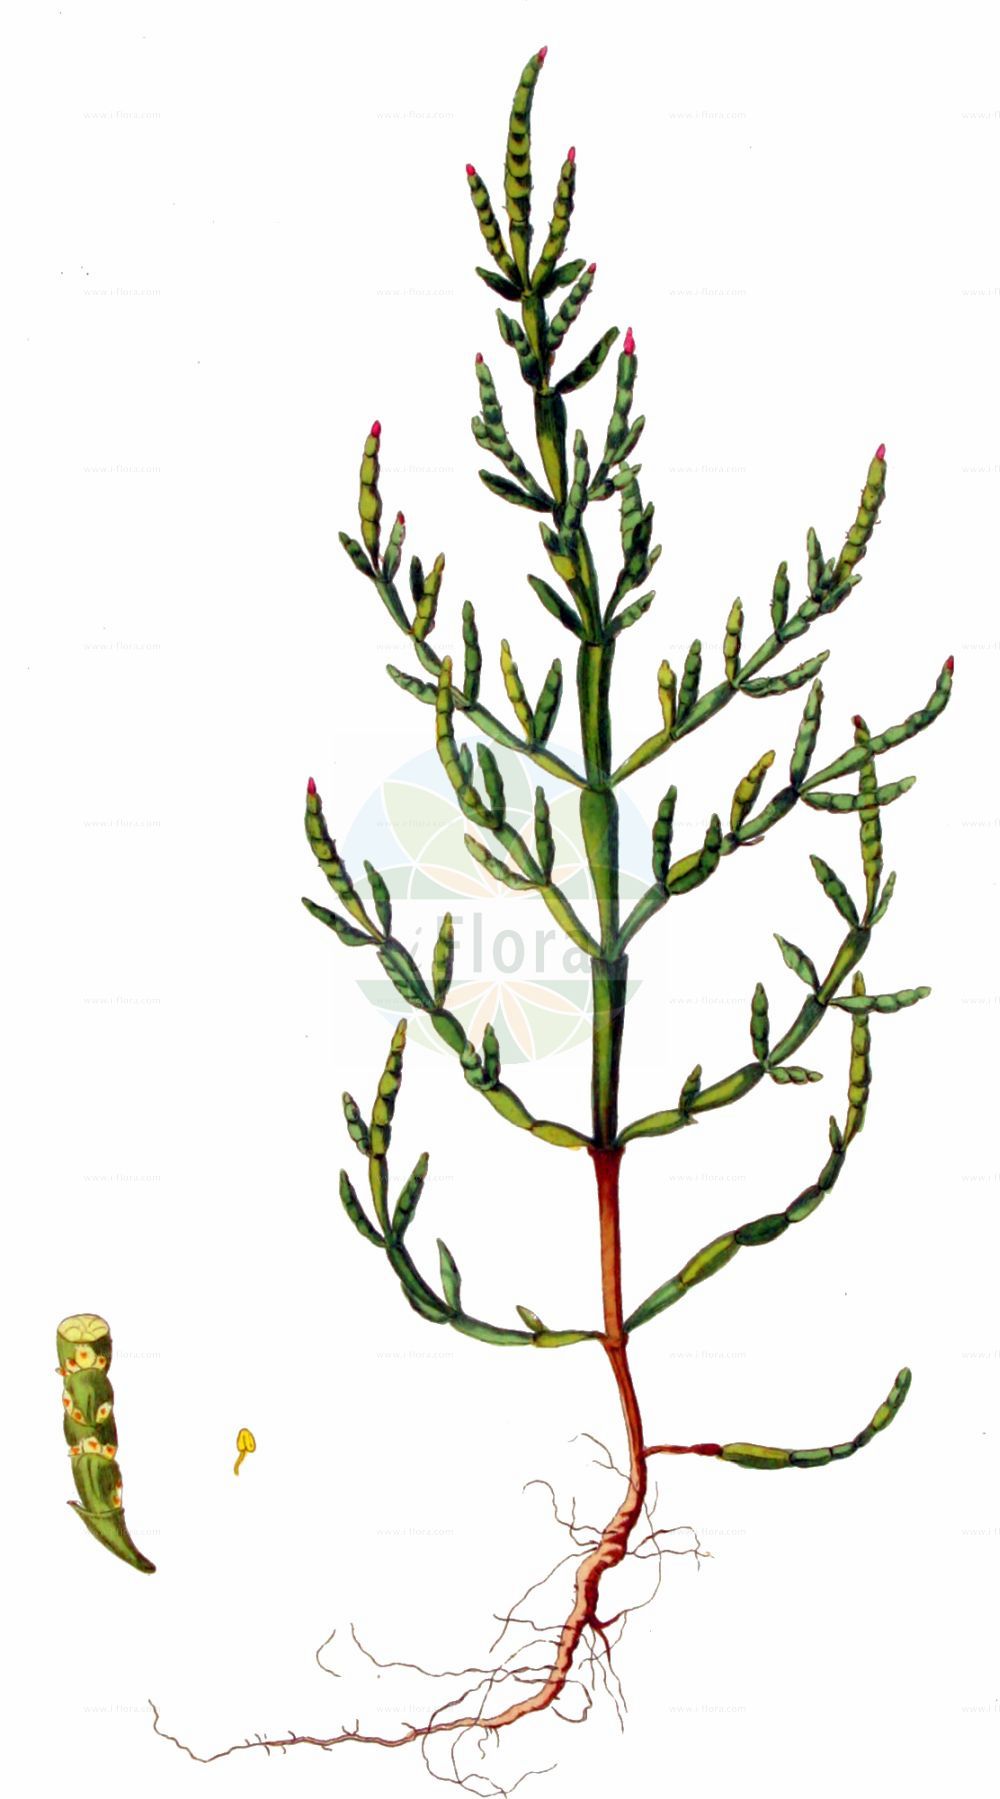 Historische Abbildung von Salicornia europaea (Europäischer Queller - Common Glasswort). Das Bild zeigt Blatt, Bluete, Frucht und Same. ---- Historical Drawing of Salicornia europaea (Europäischer Queller - Common Glasswort). The image is showing leaf, flower, fruit and seed.(Salicornia europaea,Europäischer Queller,Common Glasswort,Salicornia annua,Salicornia europaea,Salicornia herbacea,Europaeischer Queller,Gewoehnlicher Queller,Kurzaehren-Queller,Queller,Common Glasswort,Purple Glasswort,Glaucous Glasswort,Red Swampfire,Slender Grasswort,Salicornia,Queller,Glassworts,Amaranthaceae,Fuchsschwanzgewächse,Pigweed family,Blatt,Bluete,Frucht,Same,leaf,flower,fruit,seed,Kops (1800-1934))